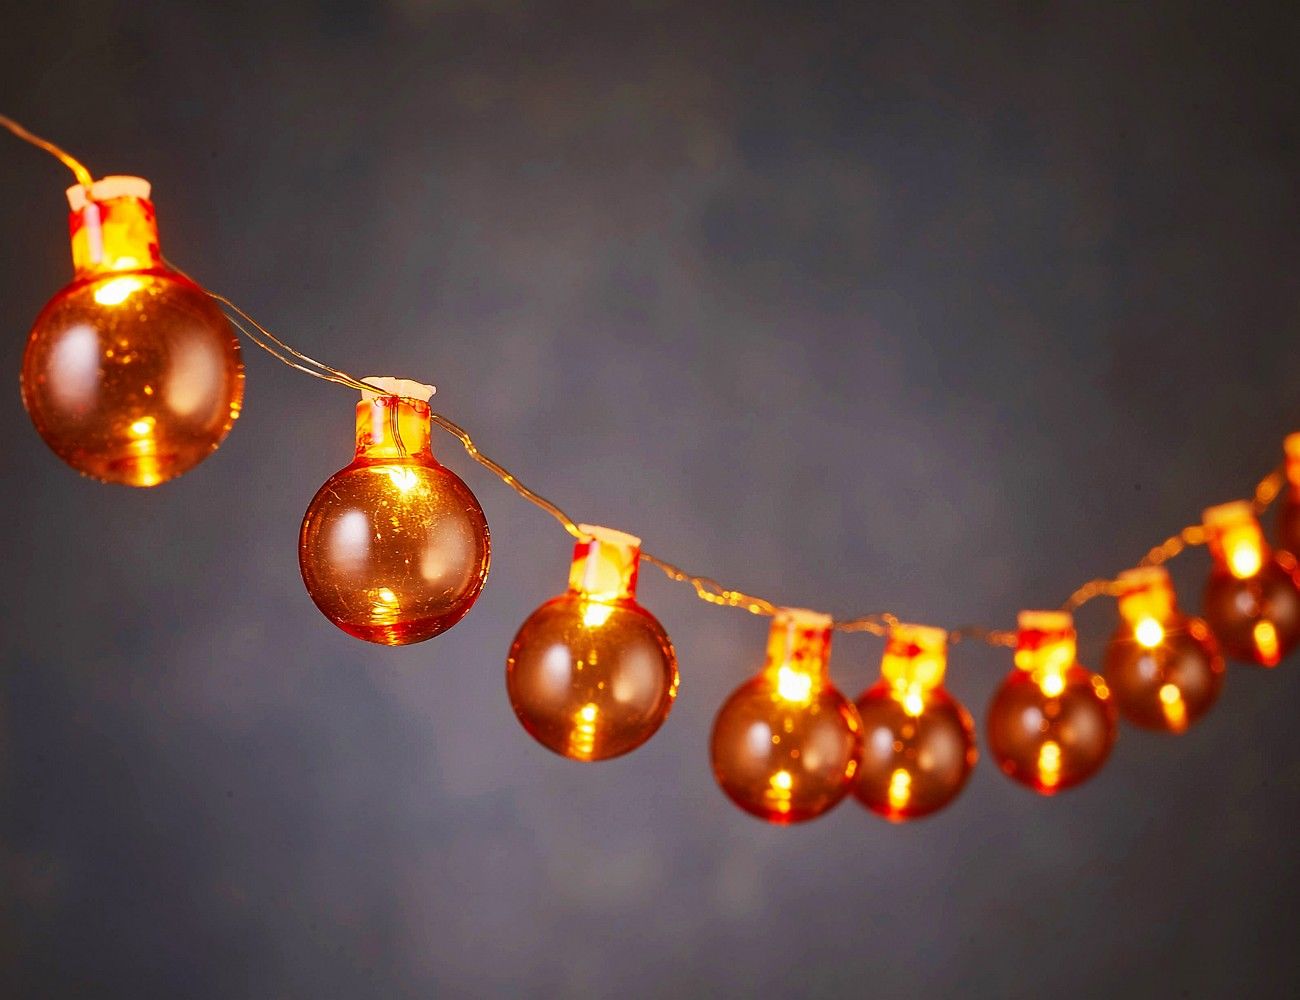 Световая гирлянда новогодняя Edelman Радость в шариках 170249-edelman 4 м оранжевый